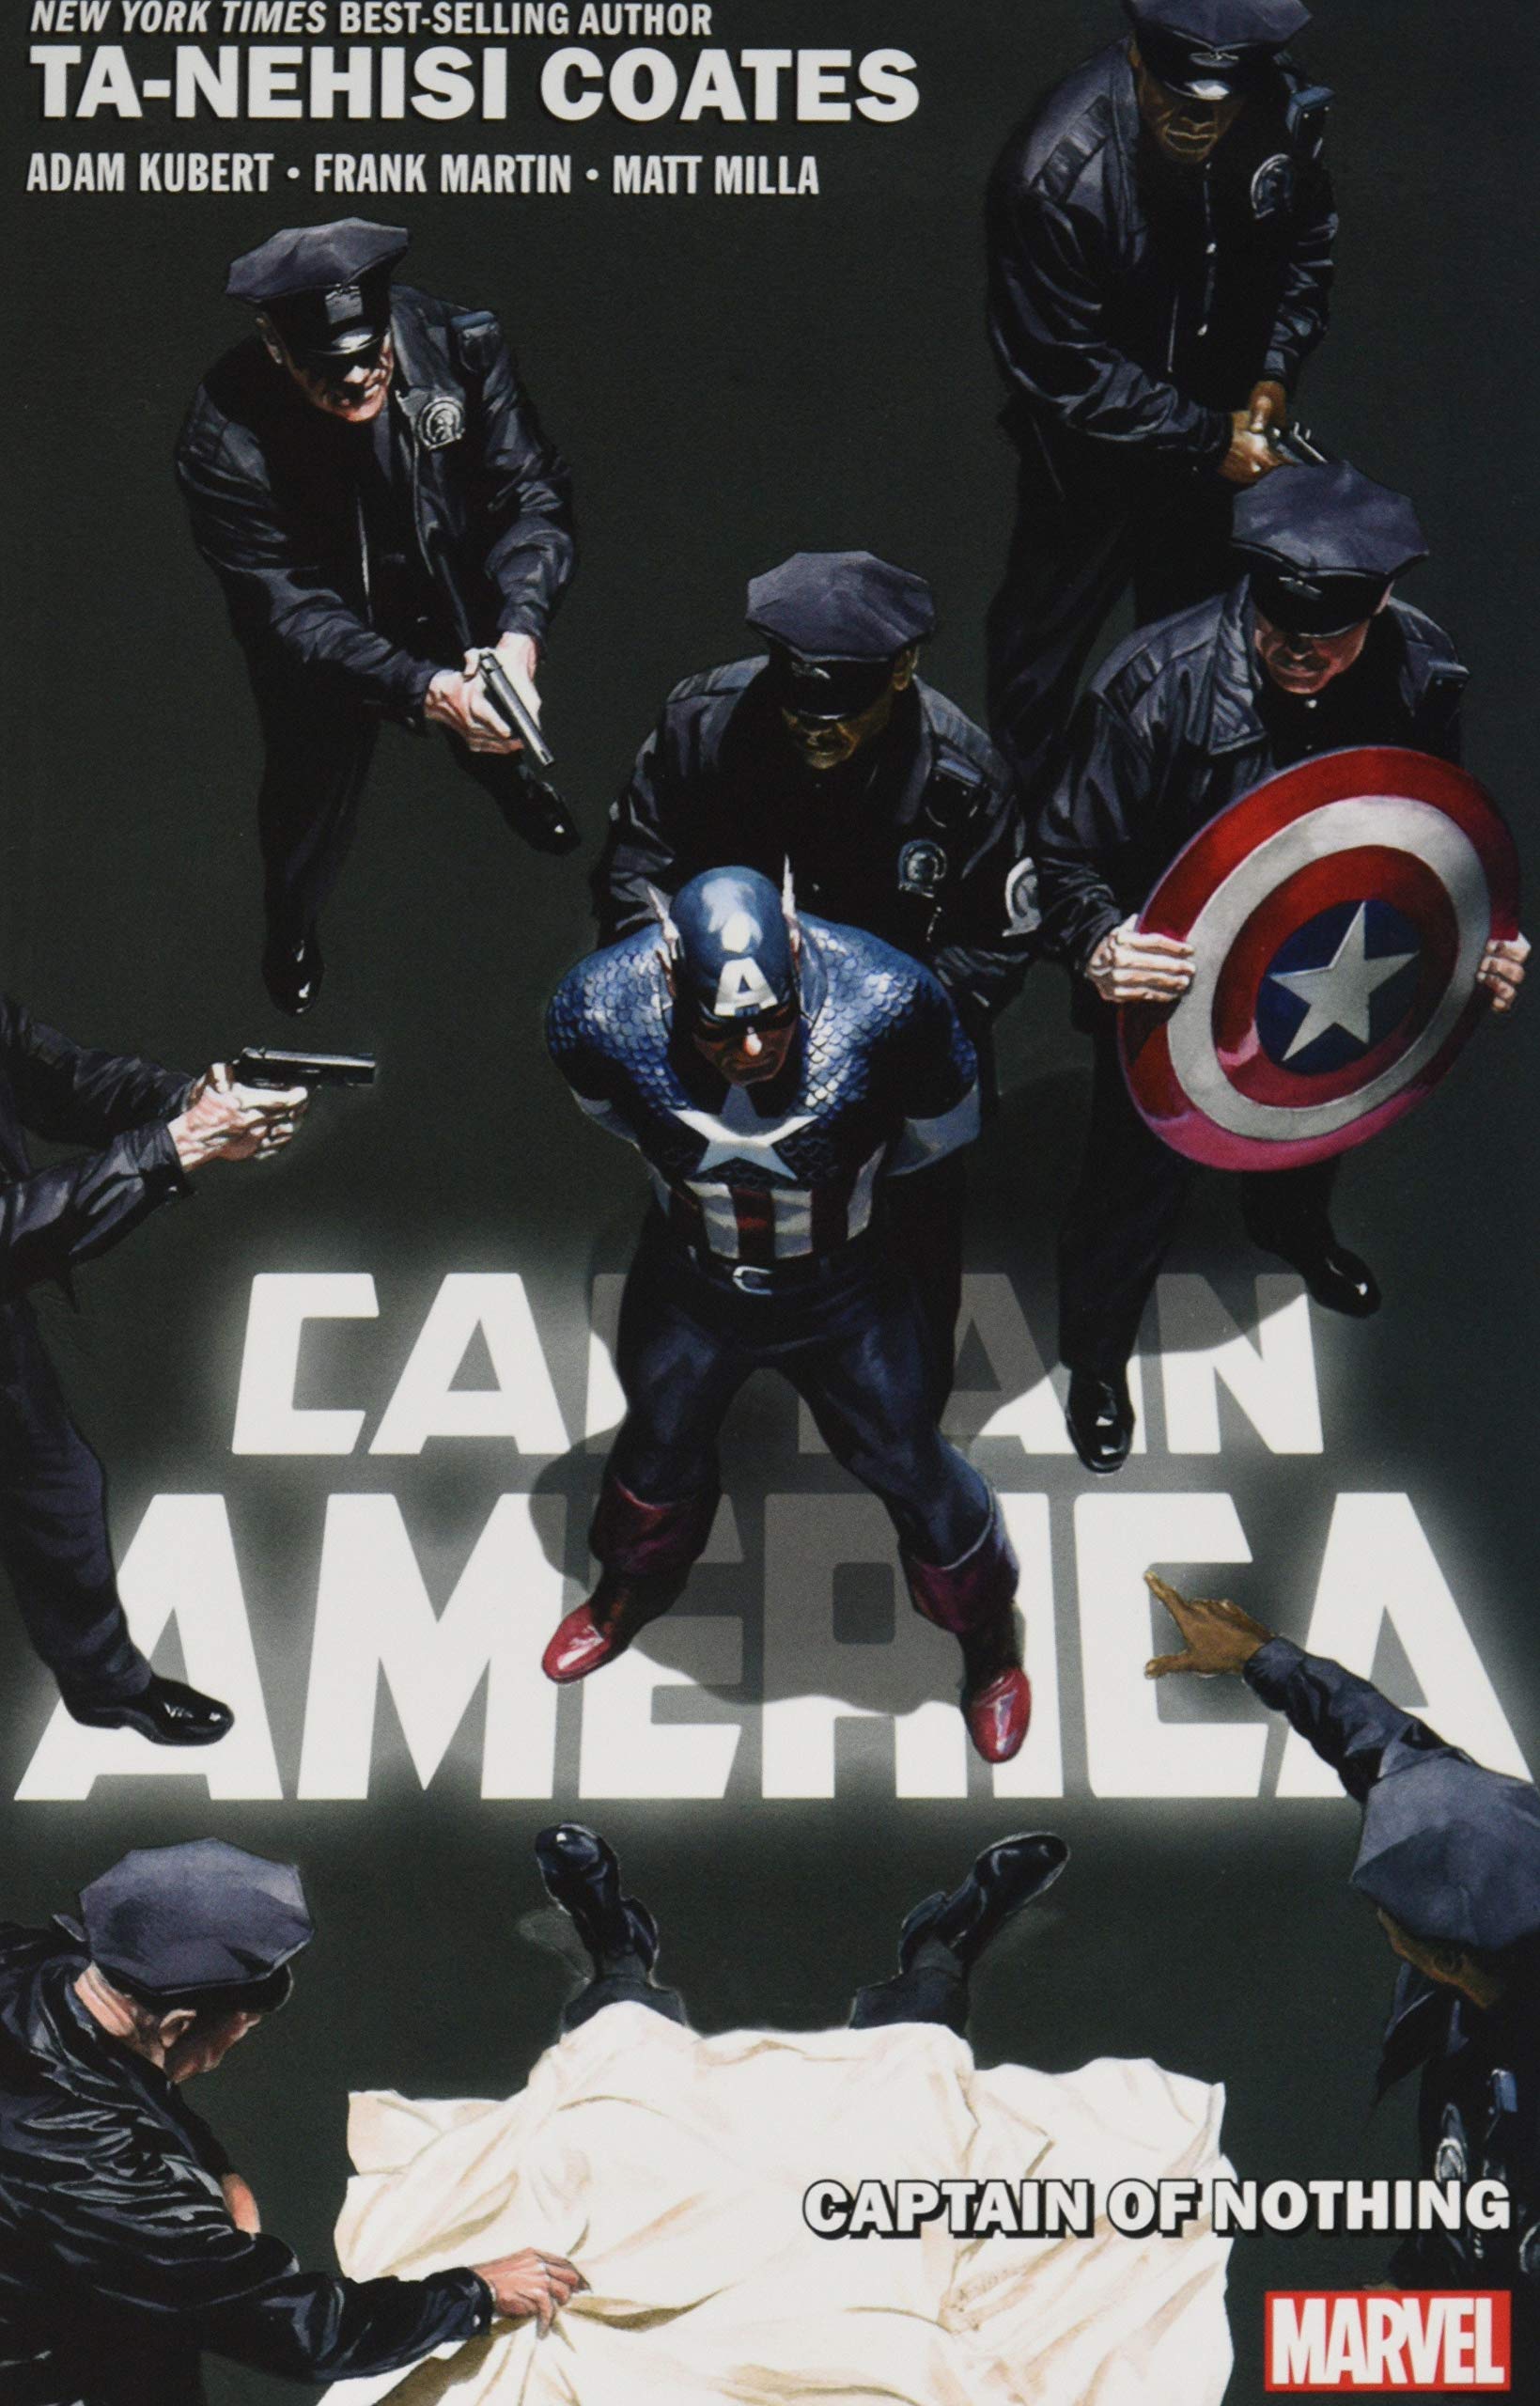 captain america, marvel comics, marvel graphic novel, marvel graphic novels - Best Books